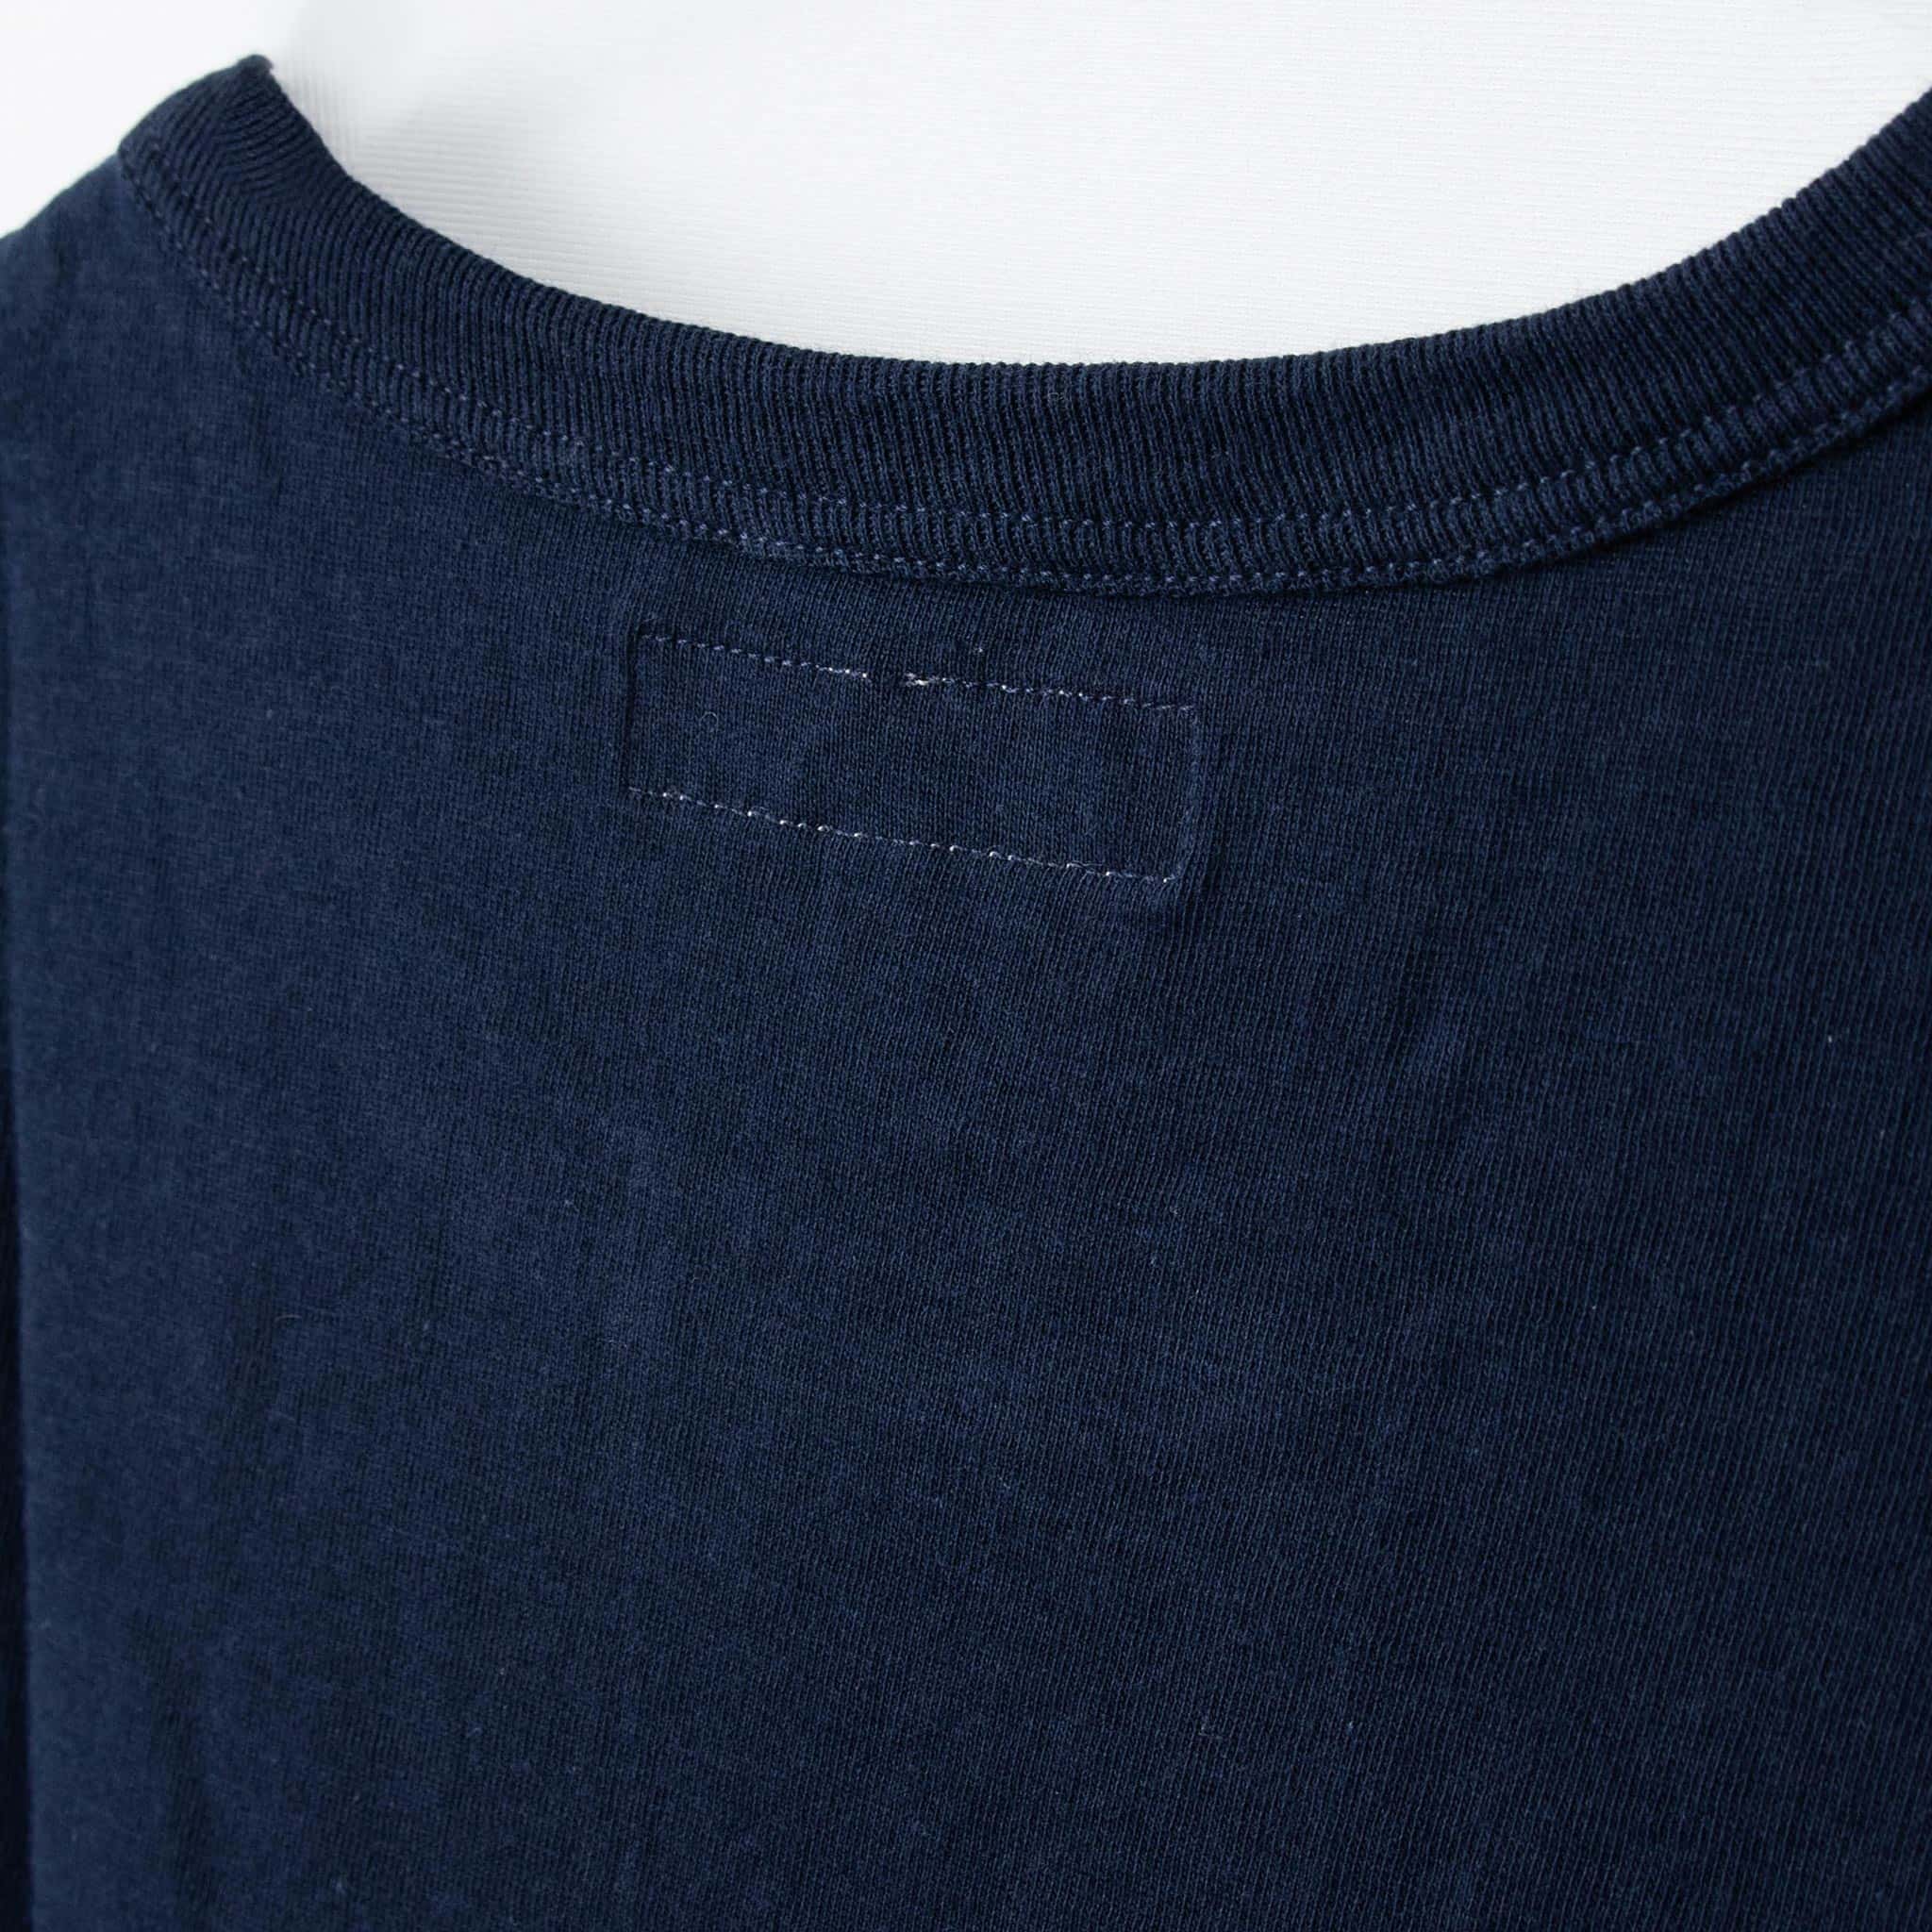 メルツベーシュヴァーネン MERZ B. SCHWANEN メンズ Tシャツ GOOD ORIGINALS T-SHIRT 1950S